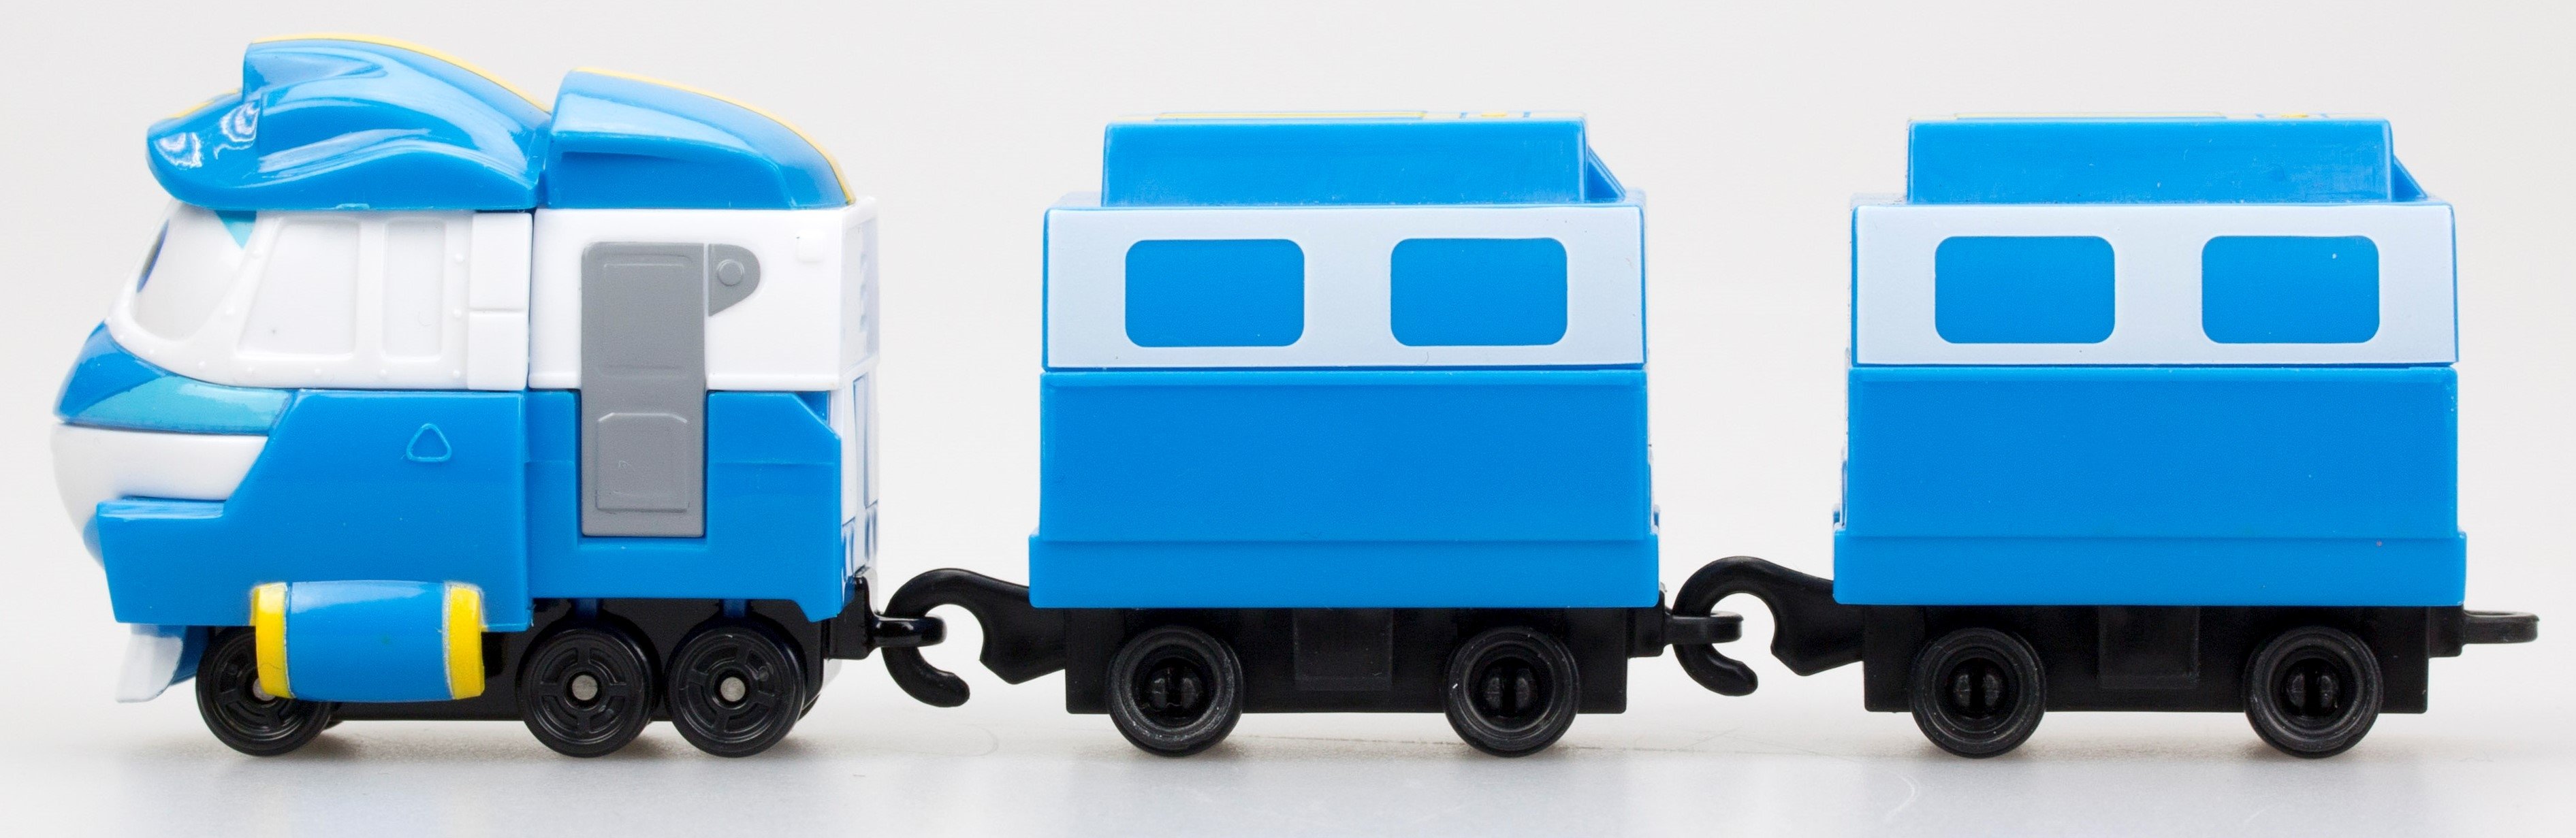 Паровозик с двумя вагонами Silverlit Robot Trains Кей (80176) - фото 2